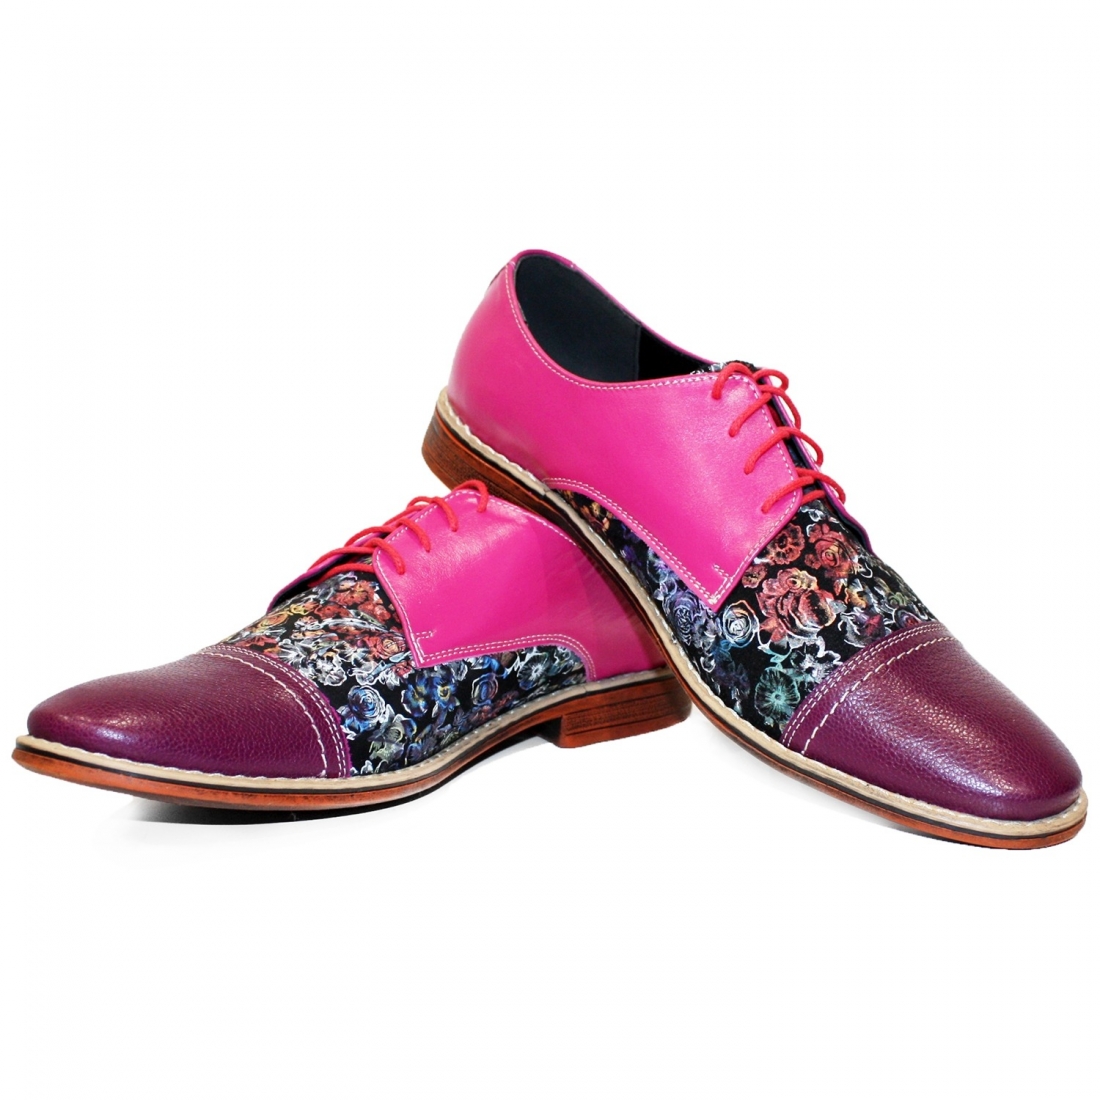 Modello Vollnero - Buty Klasyczne - Handmade Colorful Italian Leather Shoes